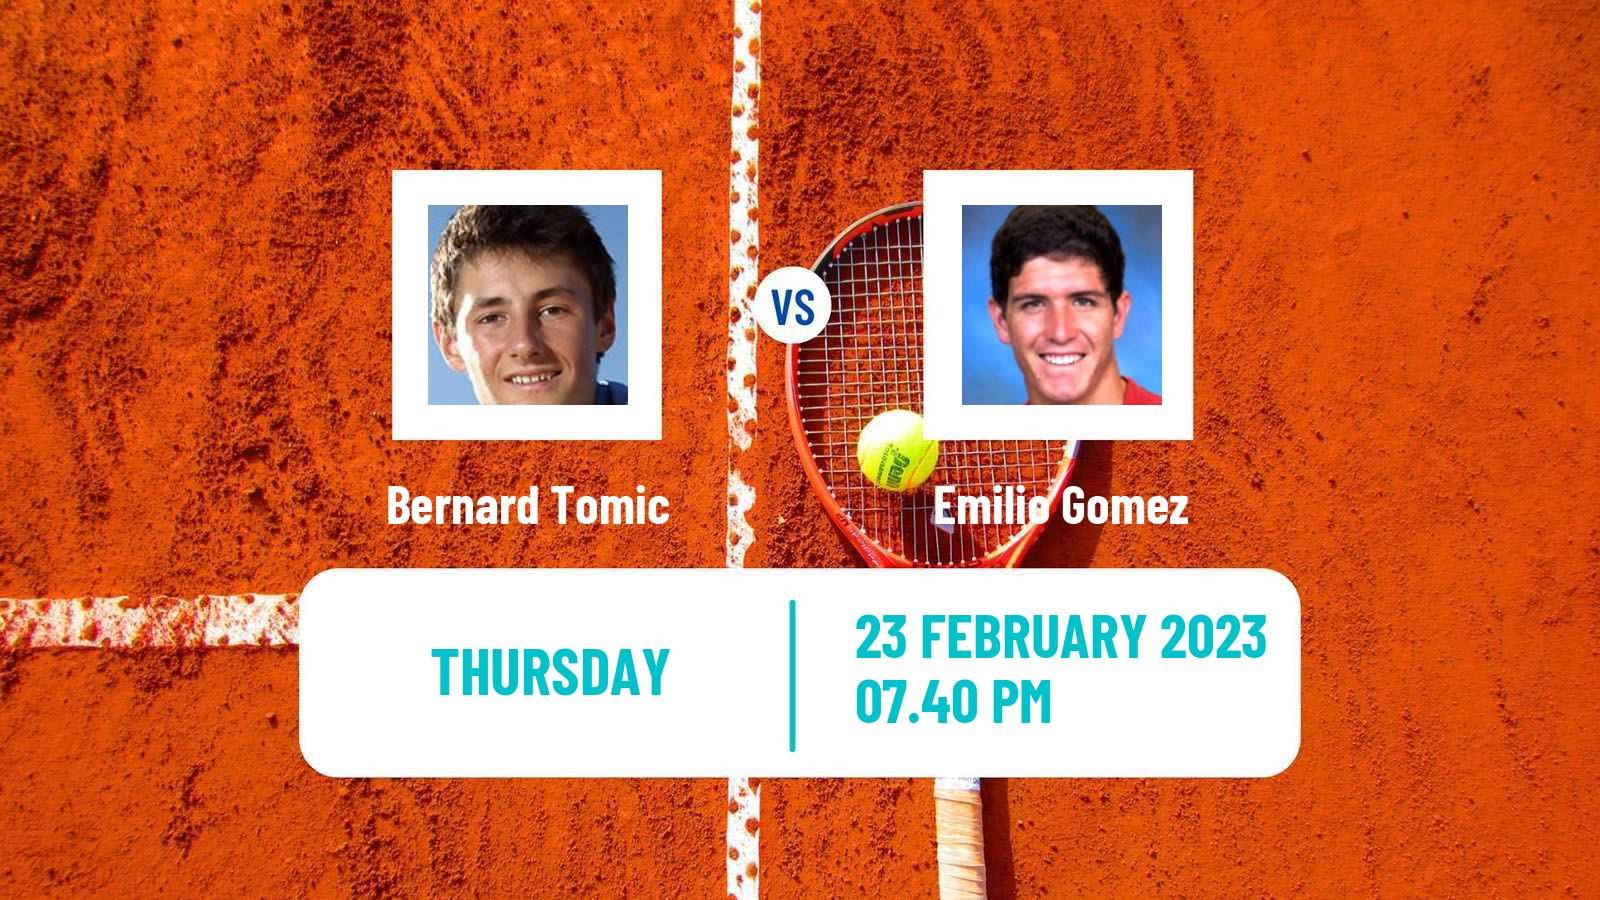 Tennis ATP Challenger Bernard Tomic - Emilio Gomez